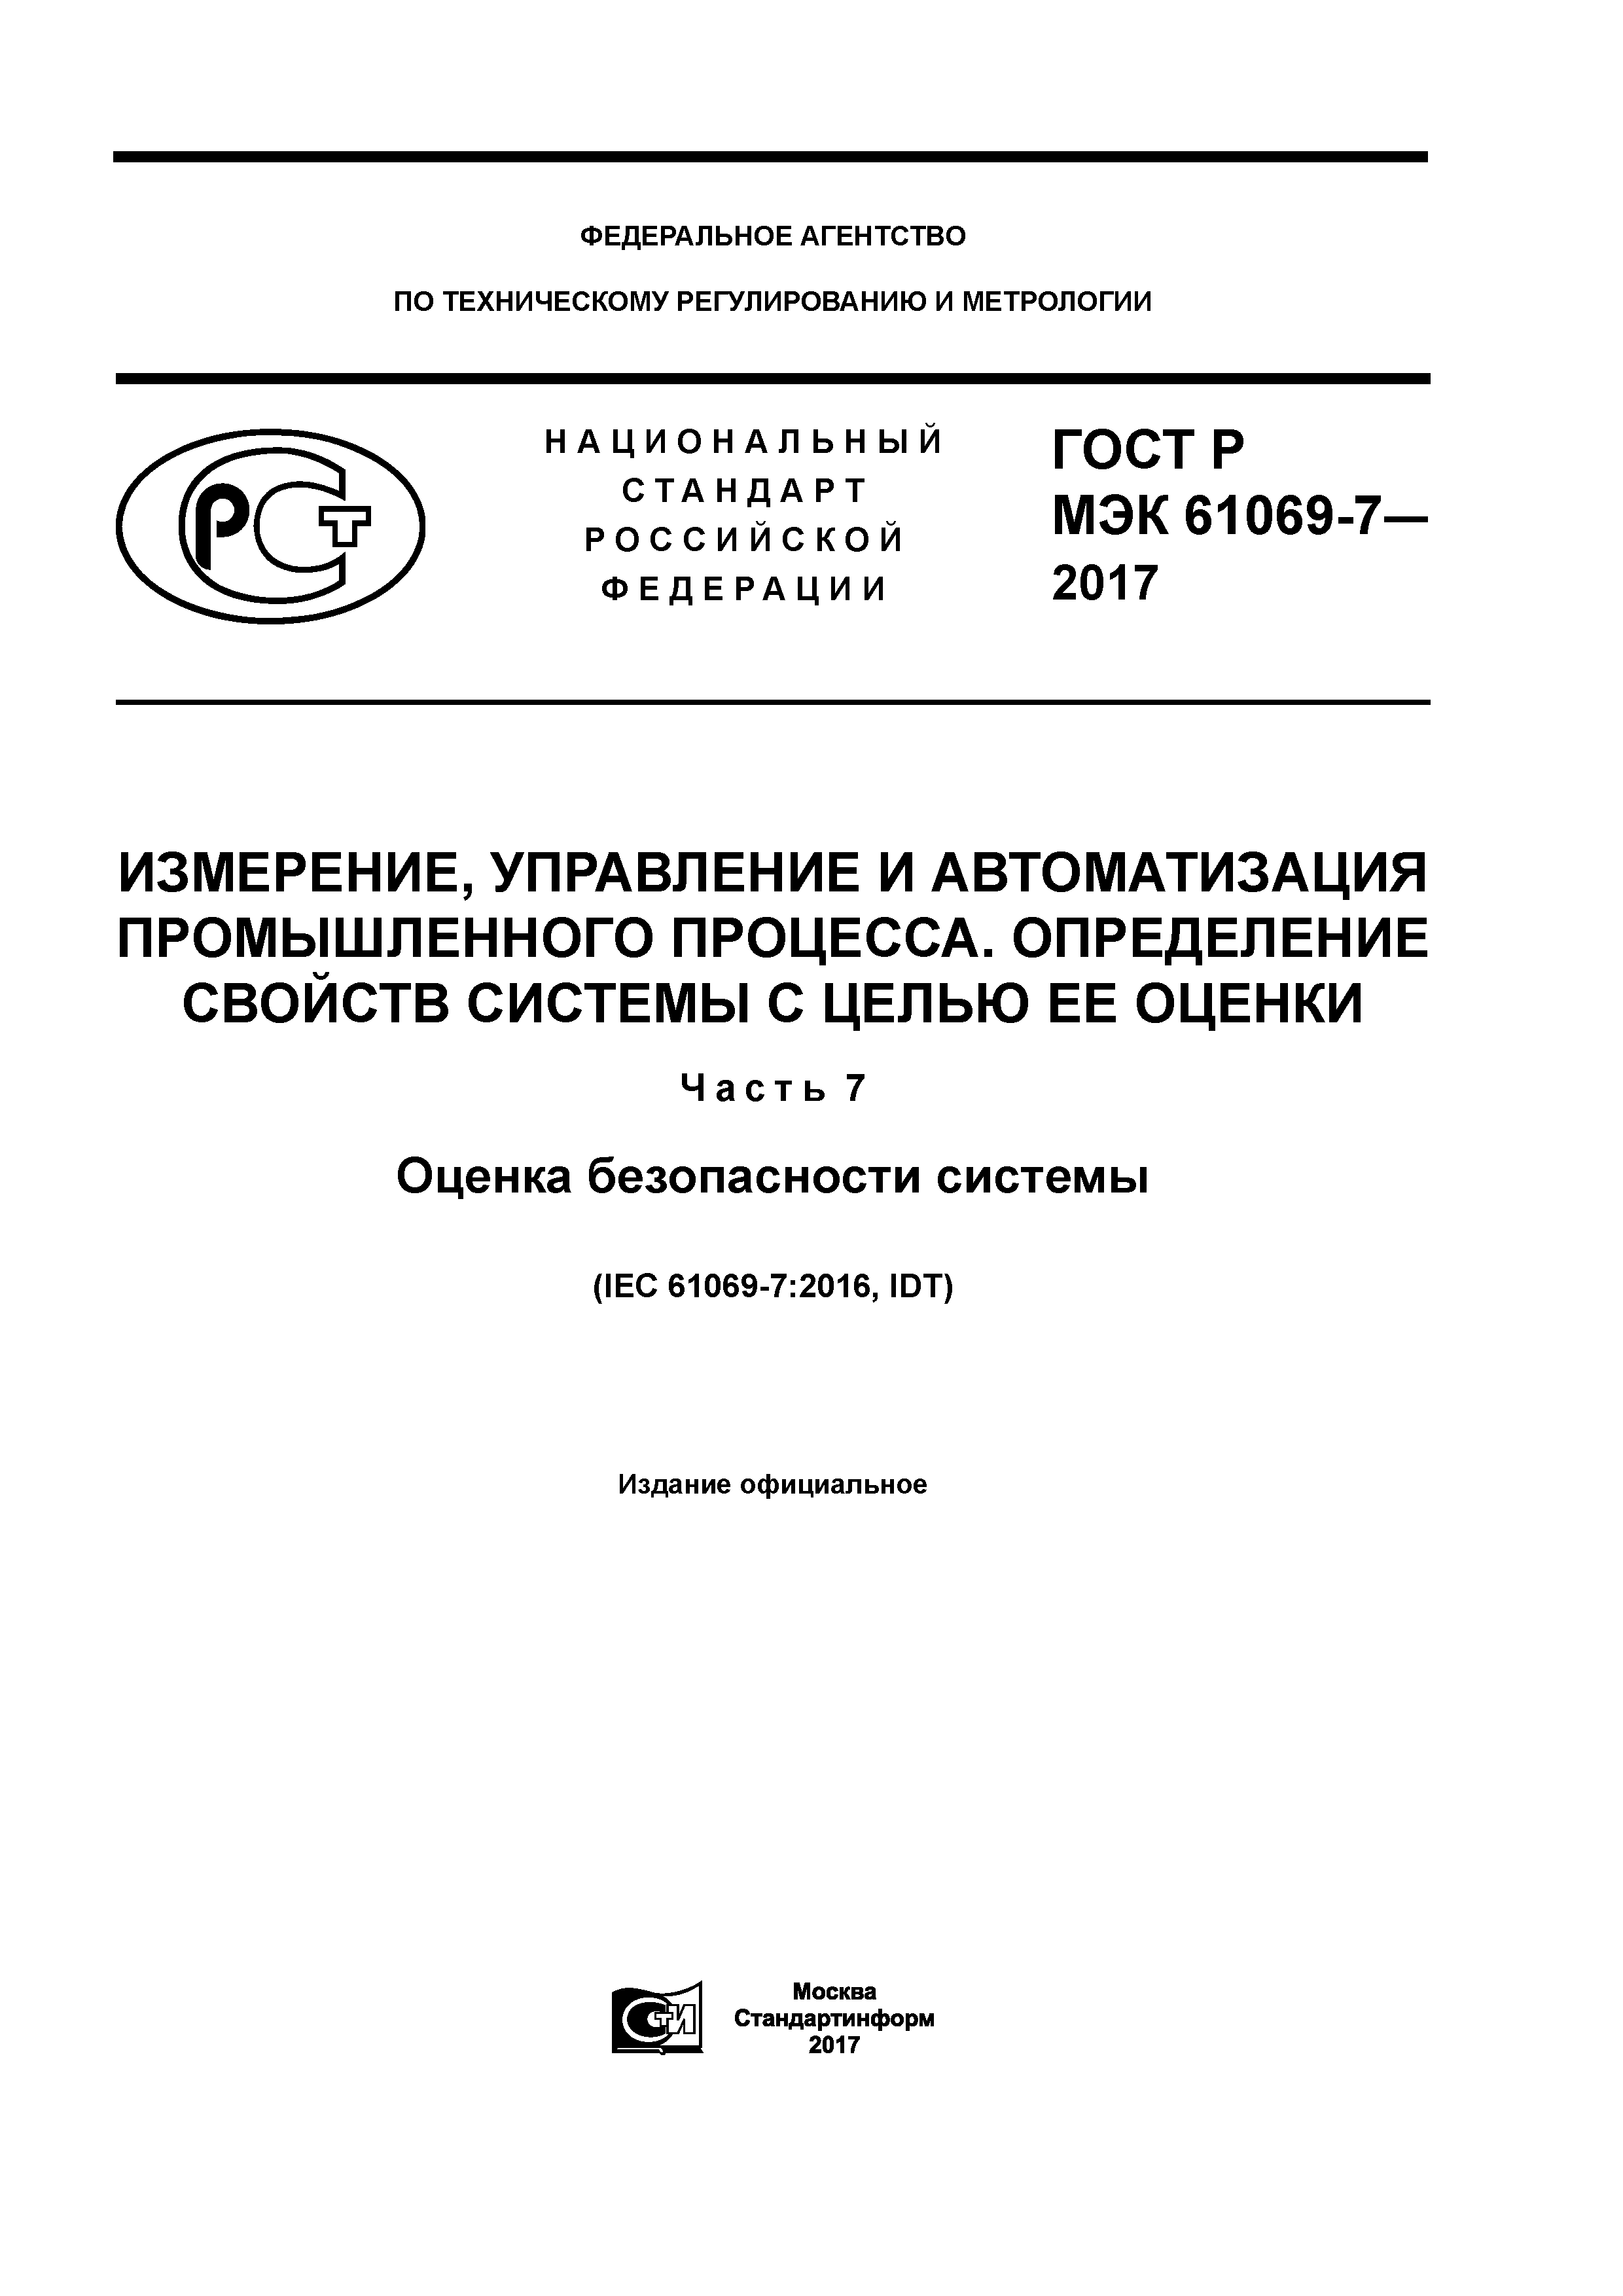 ГОСТ Р МЭК 61069-7-2017